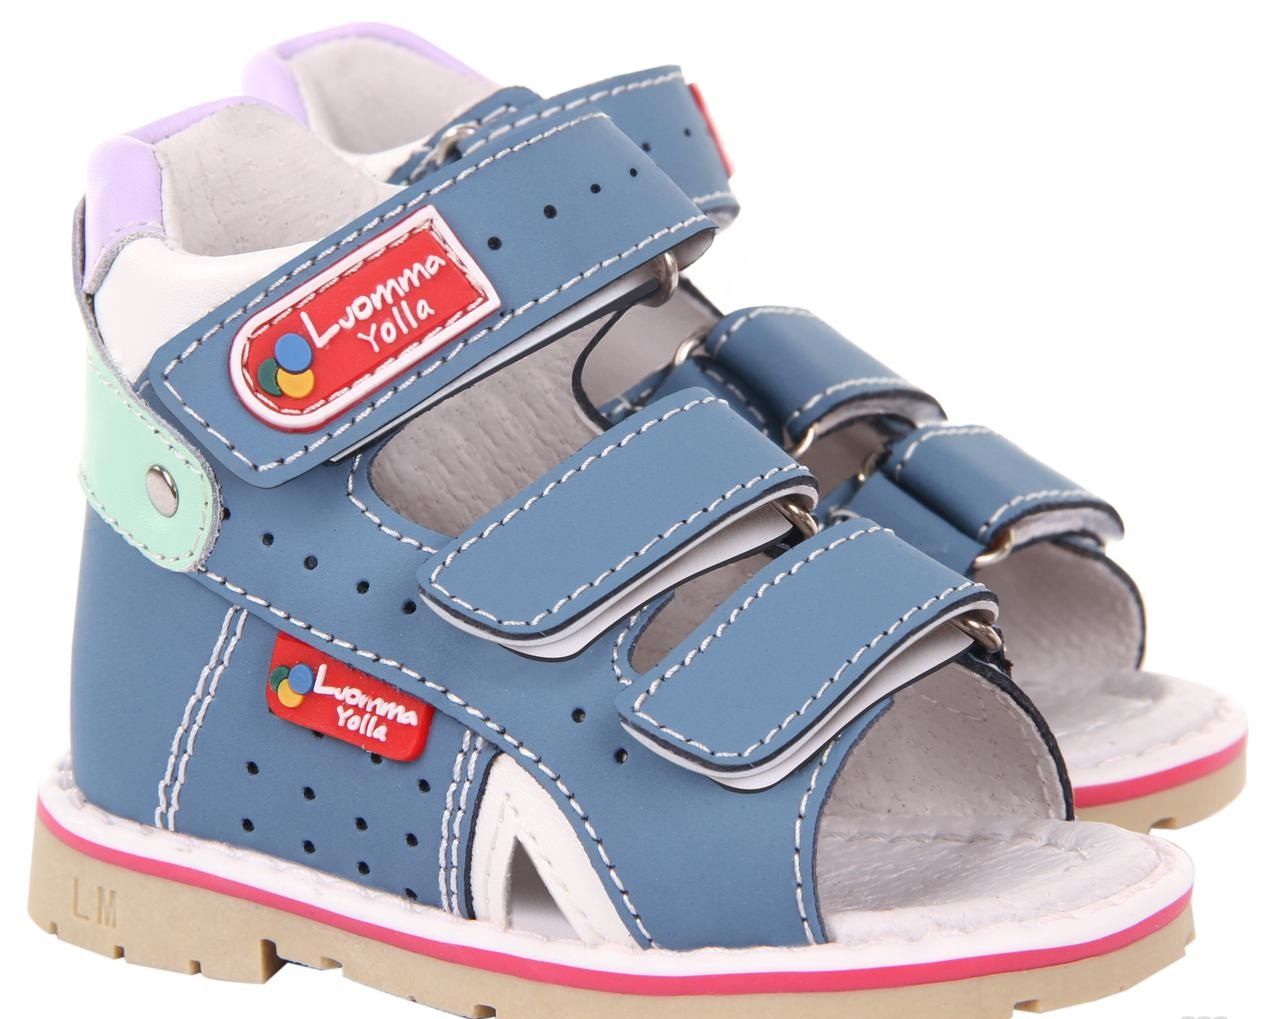 בריאות כף הרגל חשובה: חשיבות התאמה נכונה של נעליים לילדים